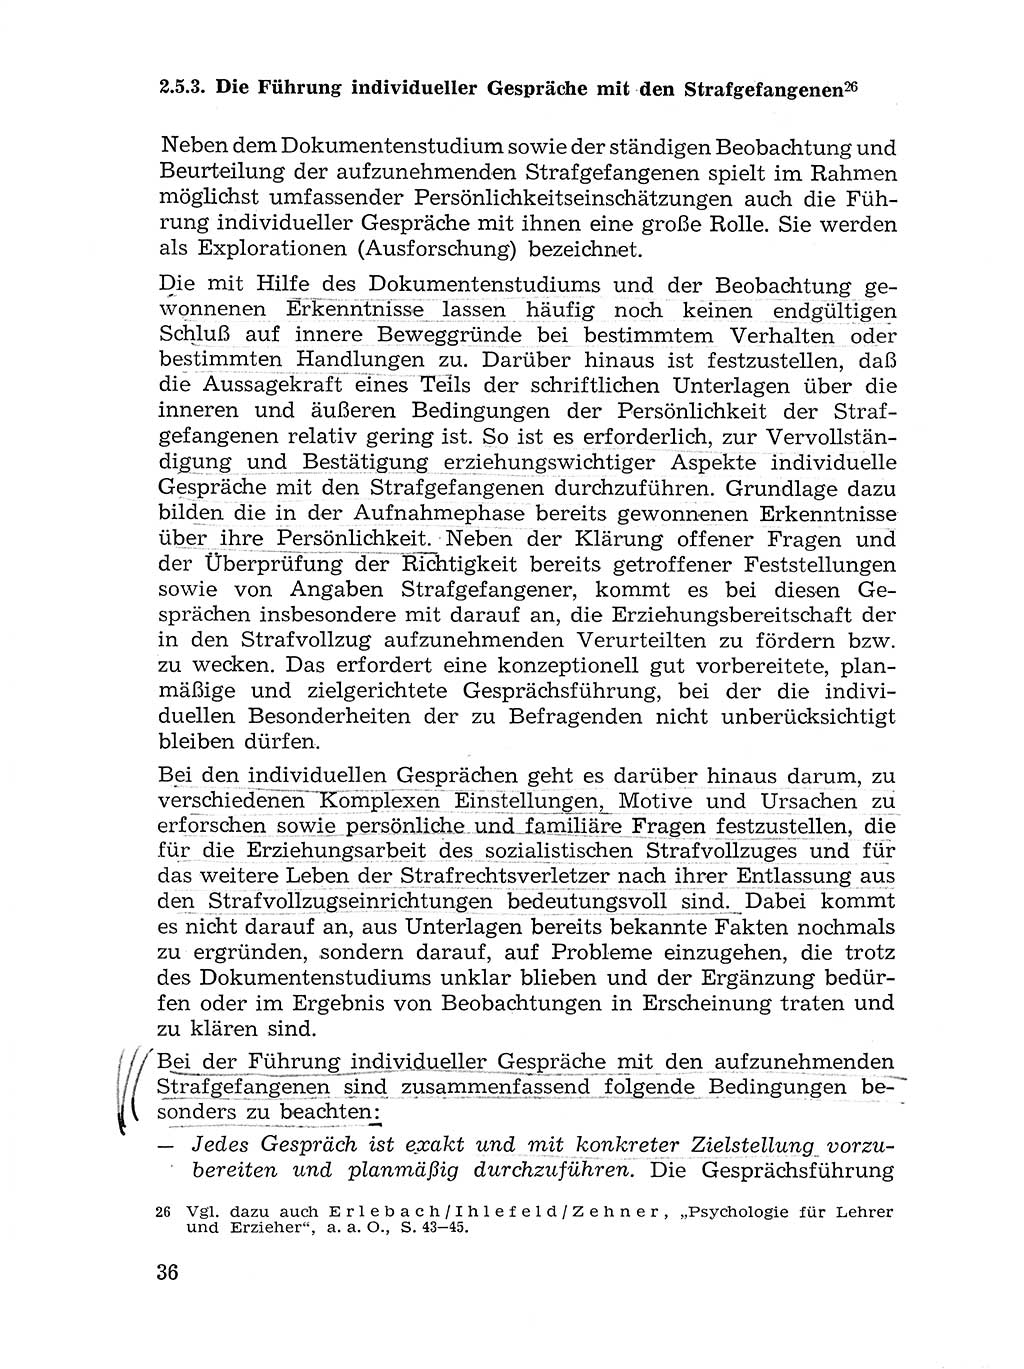 Sozialistischer Strafvollzug (SV) [Deutsche Demokratische Republik (DDR)] 1972, Seite 36 (Soz. SV DDR 1972, S. 36)